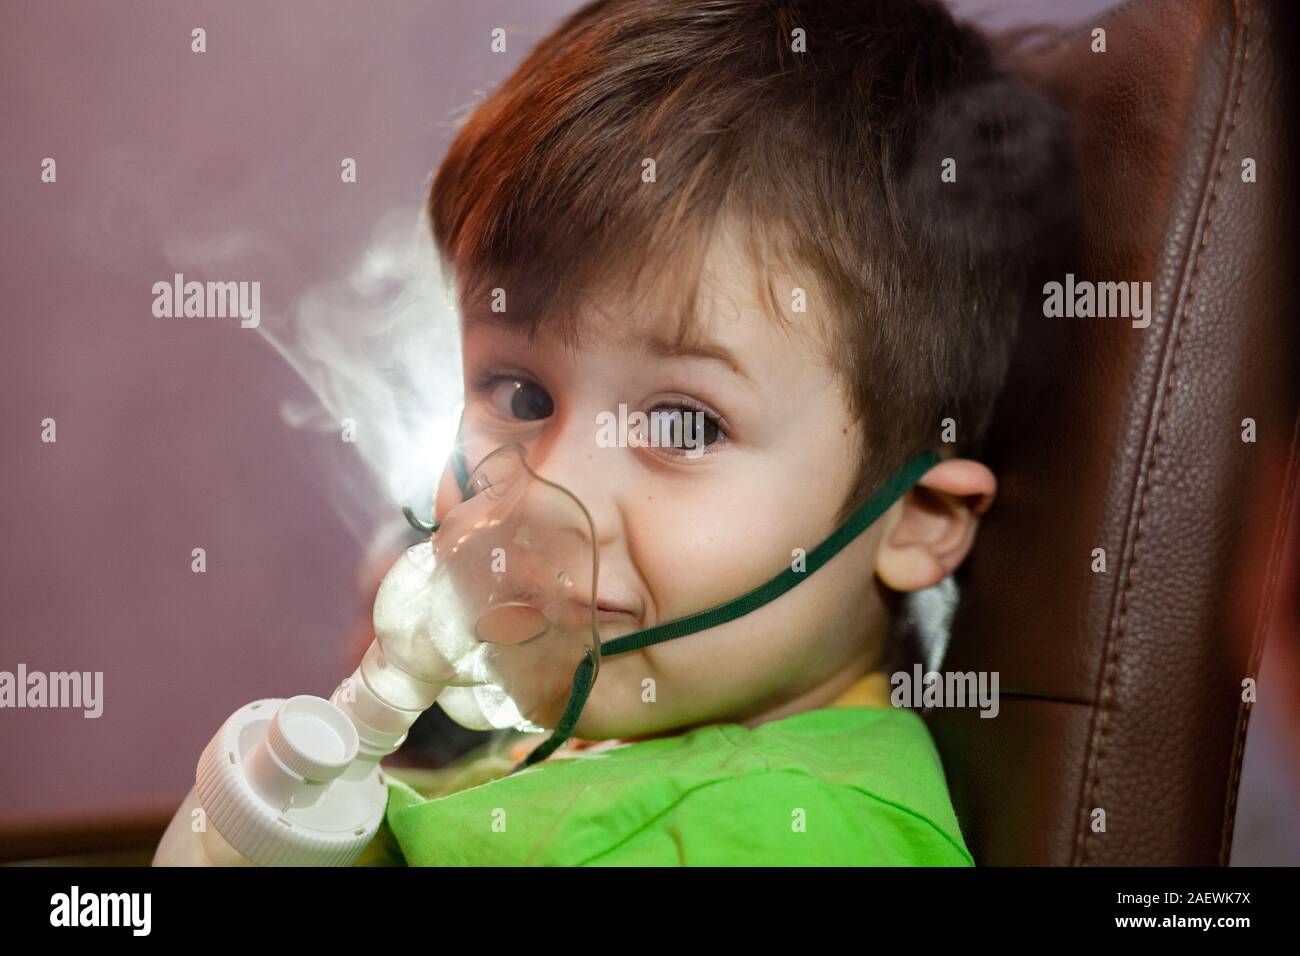 Petit garçon dans un masque, les traitements des voies respiratoires avec  un pulvérisateur à la maison. Siège bébé avec un nébulisateur dans sa  bouche, inhalateur, le traitement de la bronchite Photo Stock 